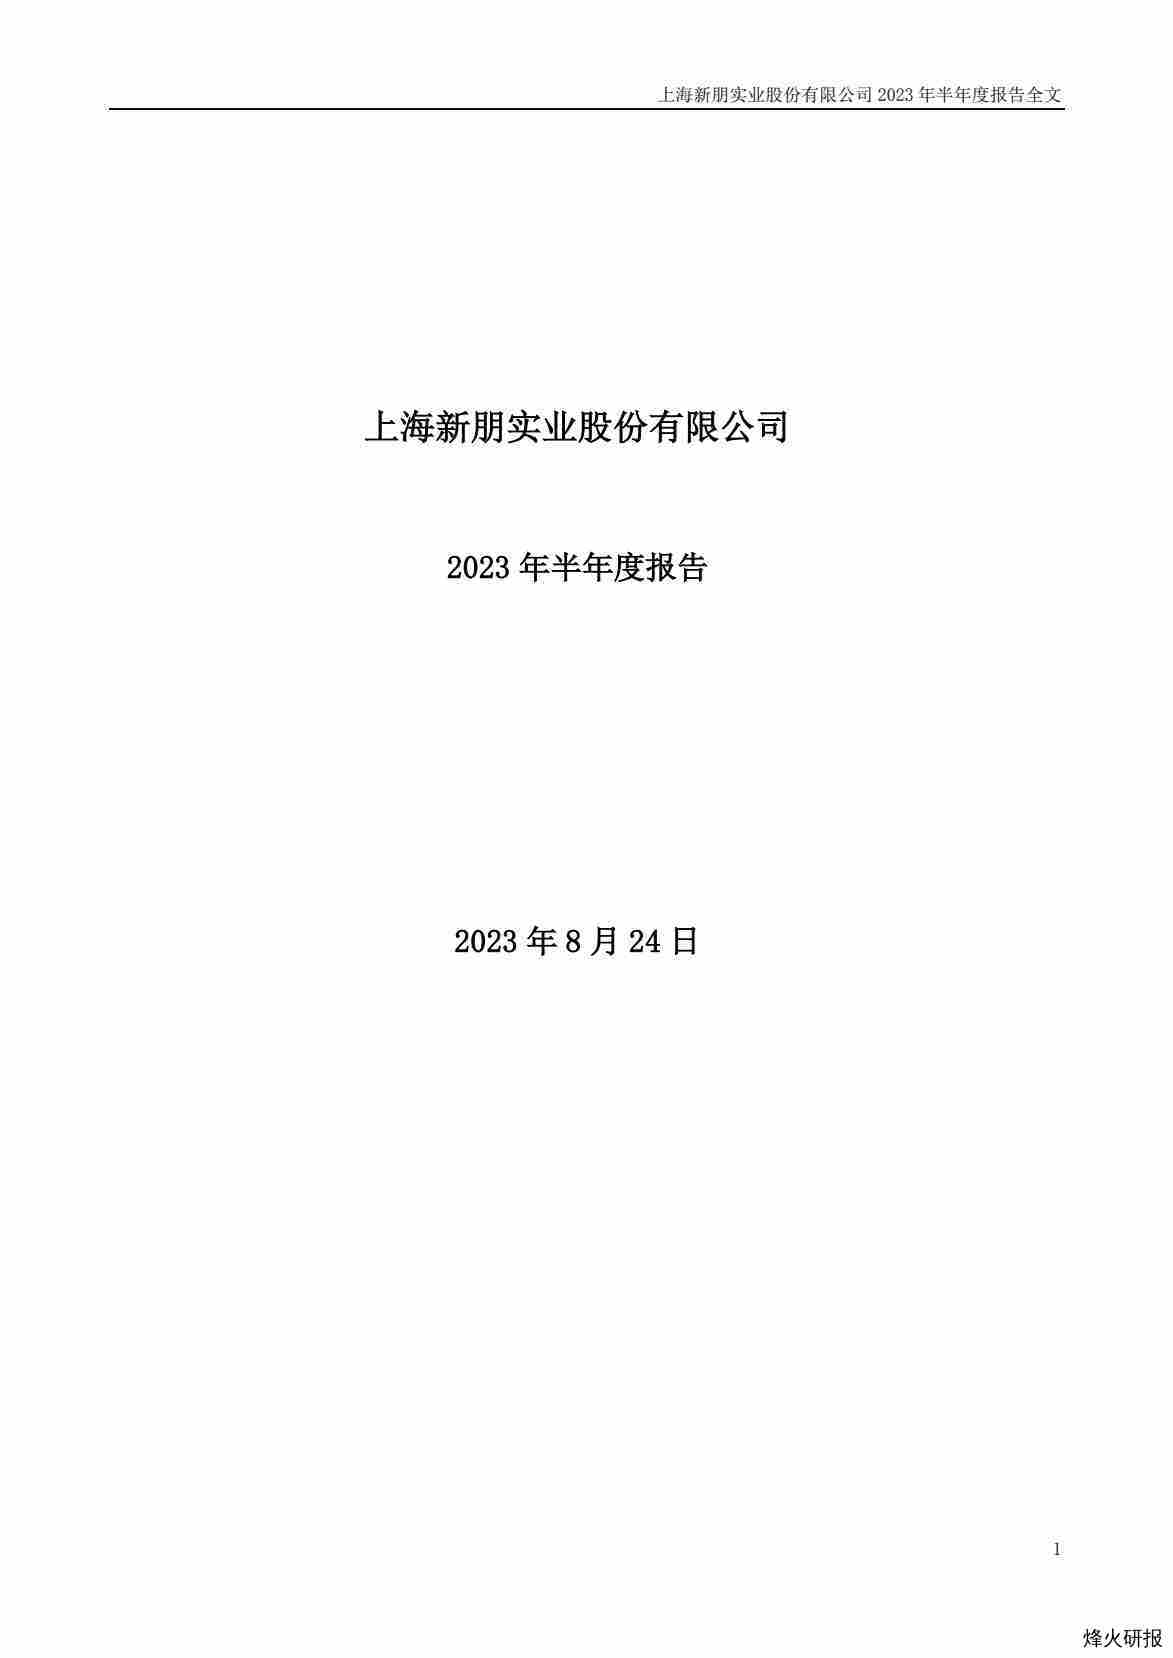 【财报】新朋股份：2023年半年度报告.pdf-第一页